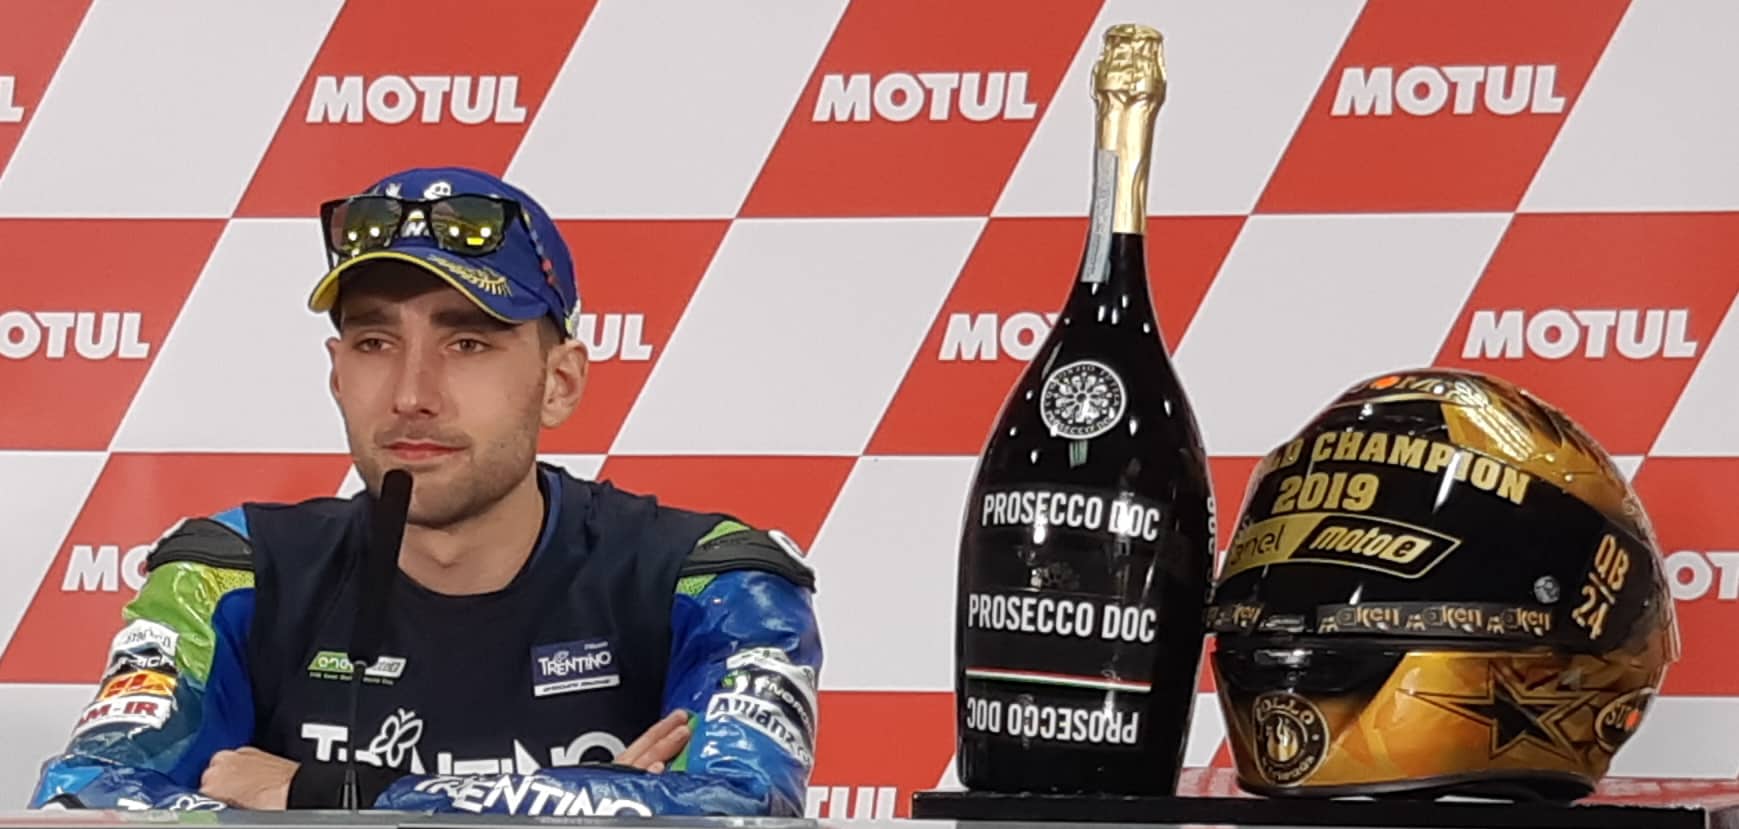 Matteo Ferrari “Bigin”  Campione del Mondo Moto E